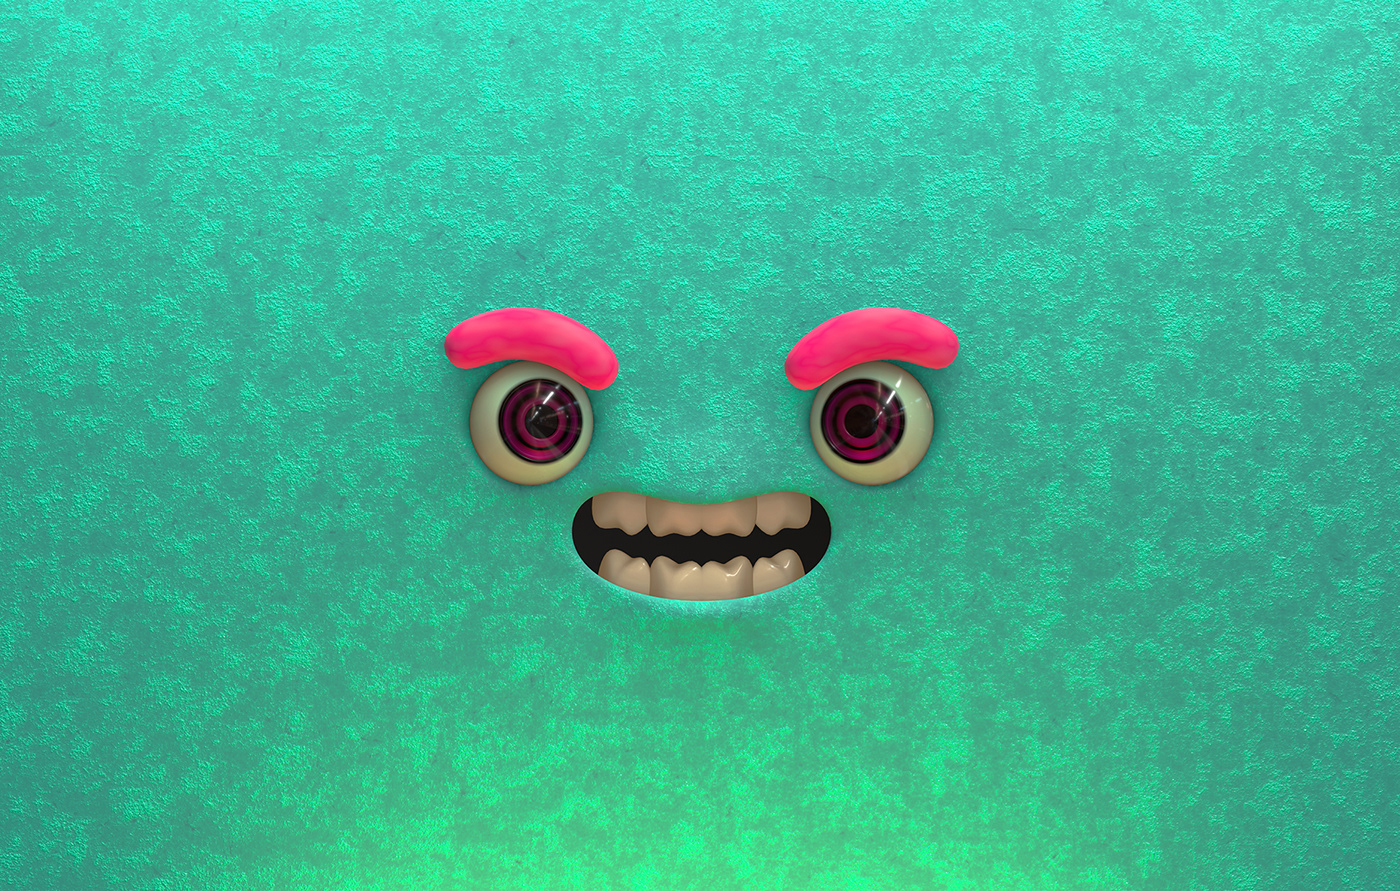 3D blender CGI Character faces Render 2023 design colorful inspiration pink